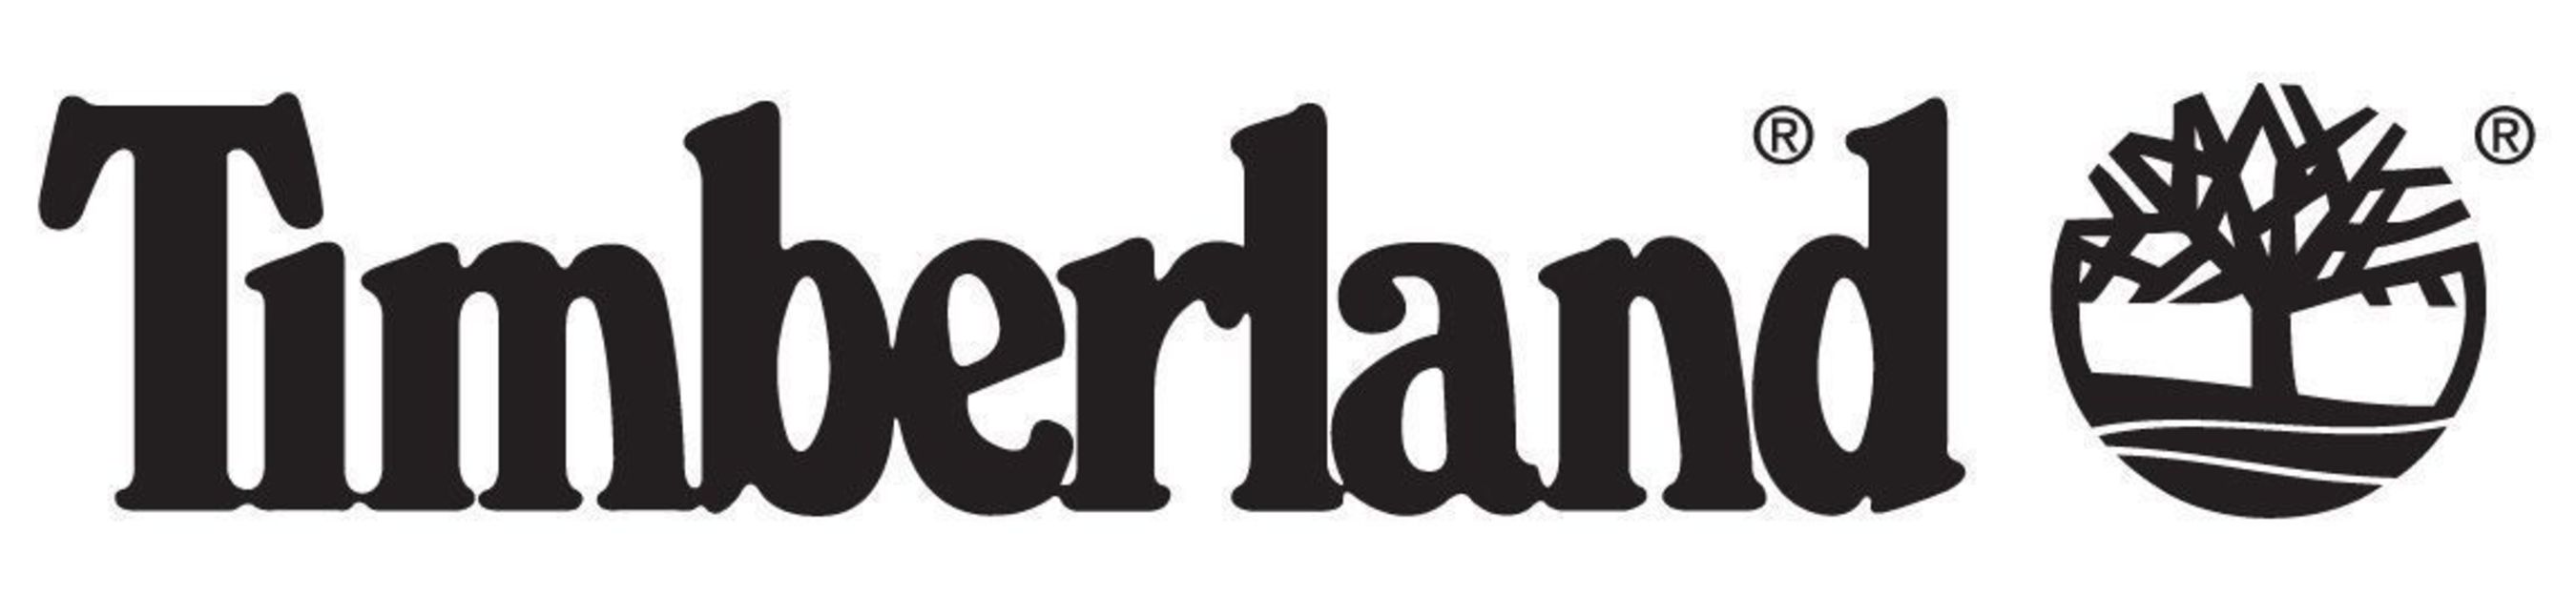 Timberland logo. (PRNewsFoto/Timberland)